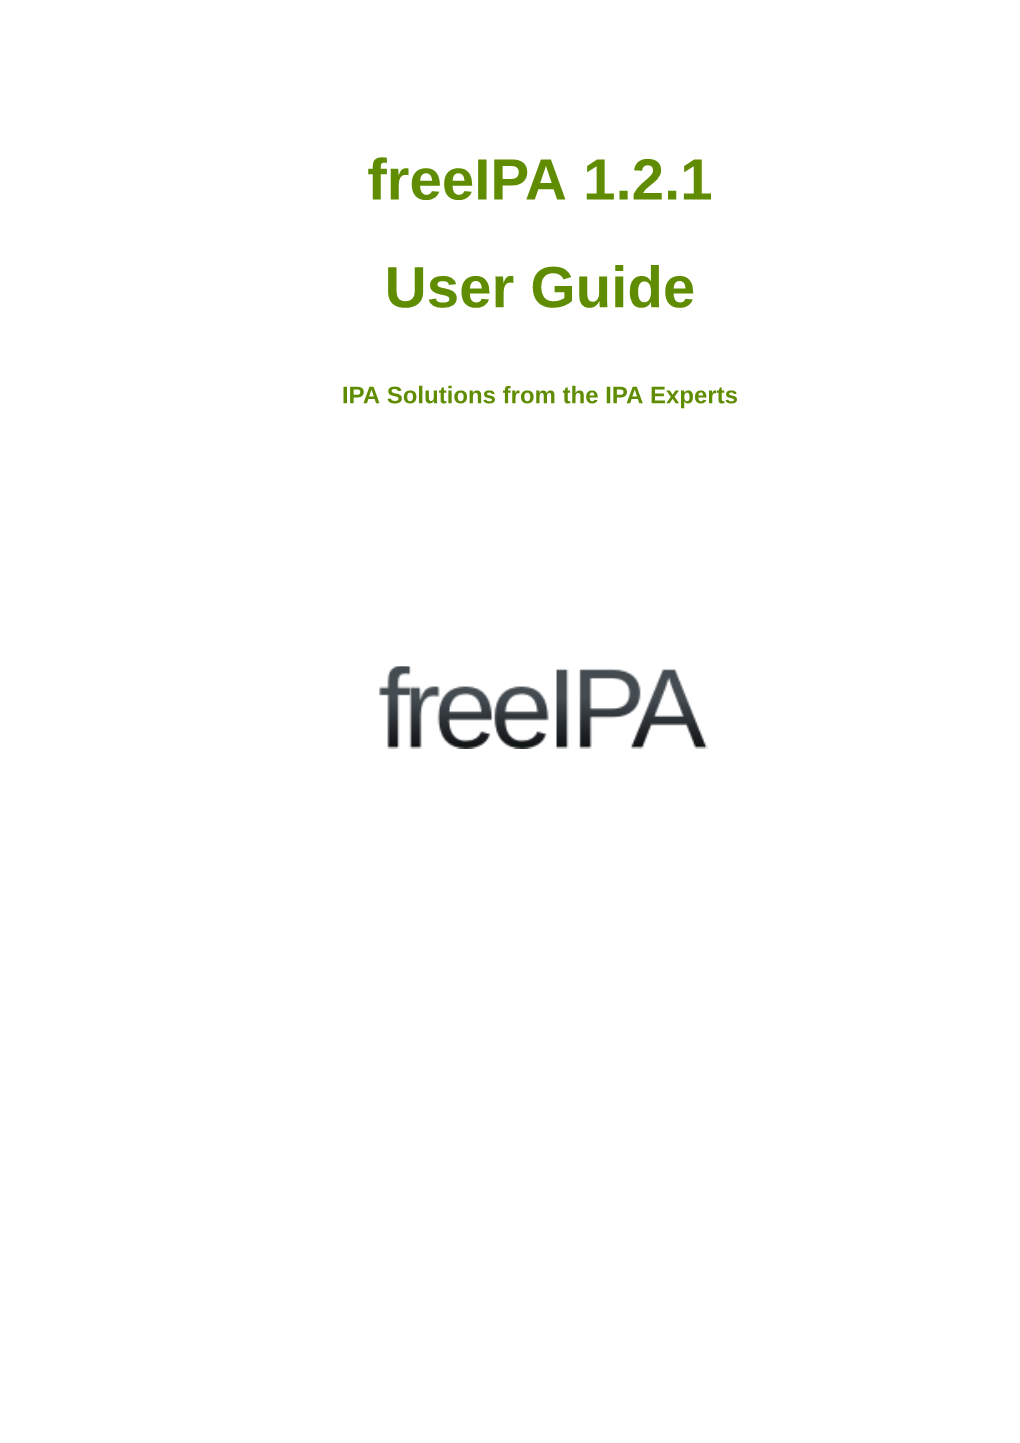 Freeipa 1.2.1 User Guide